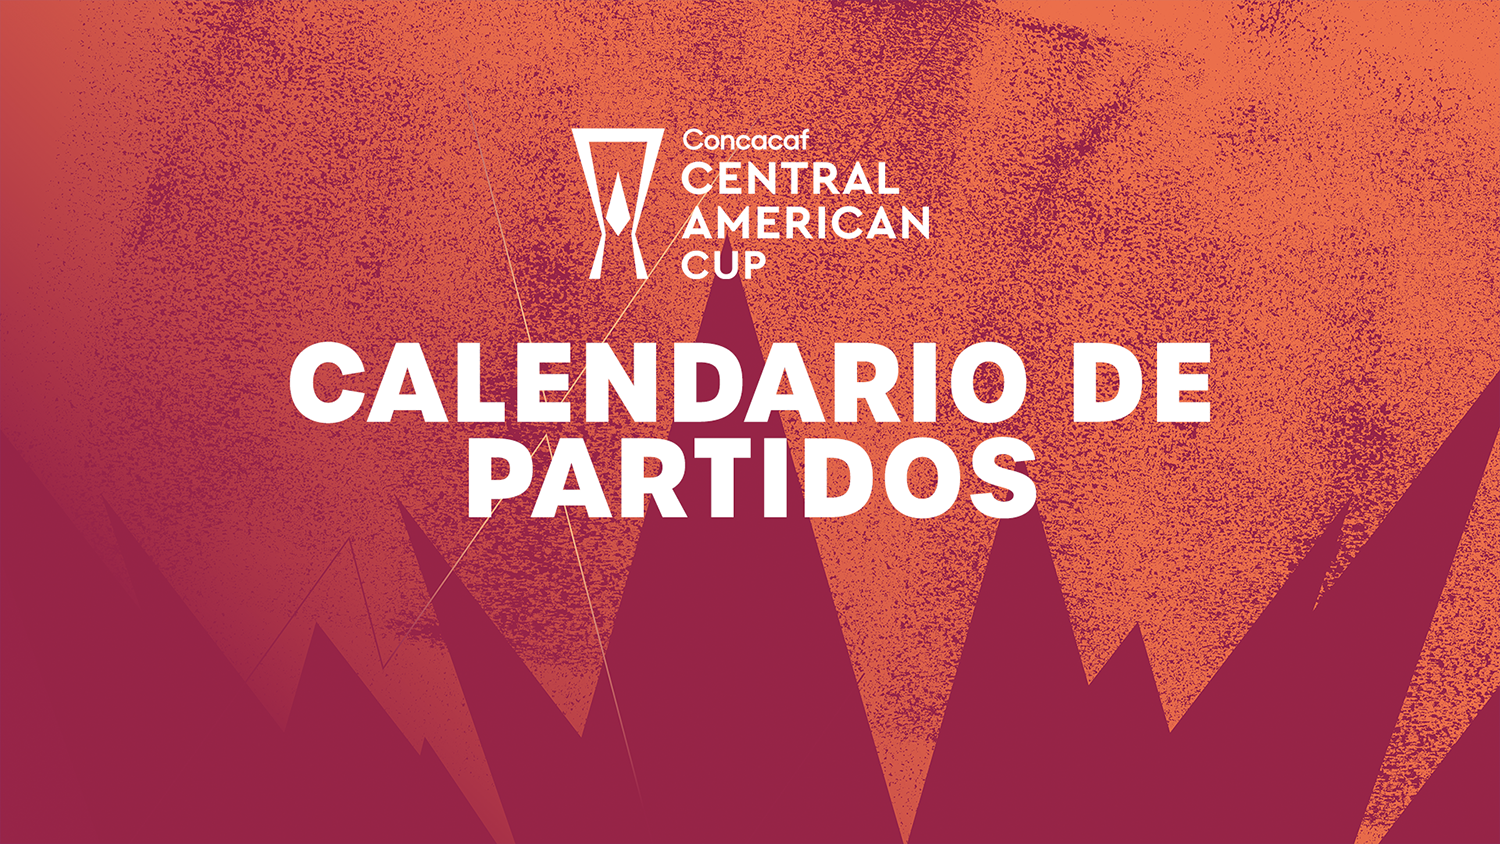 Calendario anunciado para la Copa Centroamericana Concacaf 2023